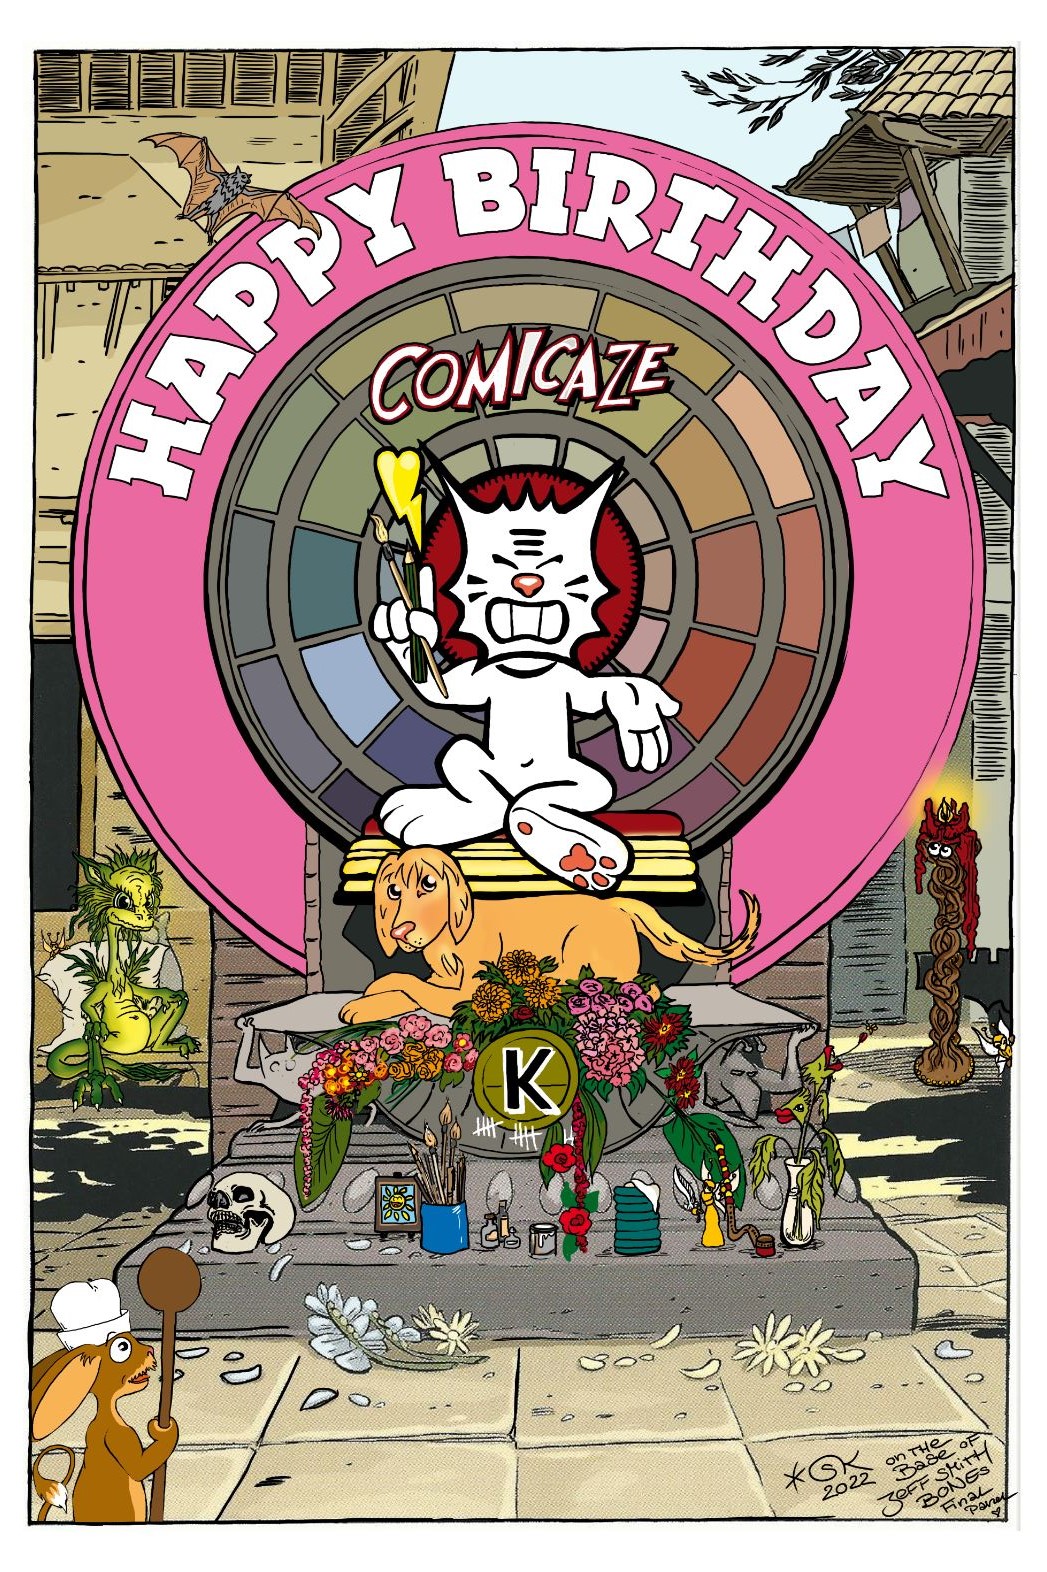 Happy Birthday Comicaze !! // Postkarte „BONEs“ à la Sasin